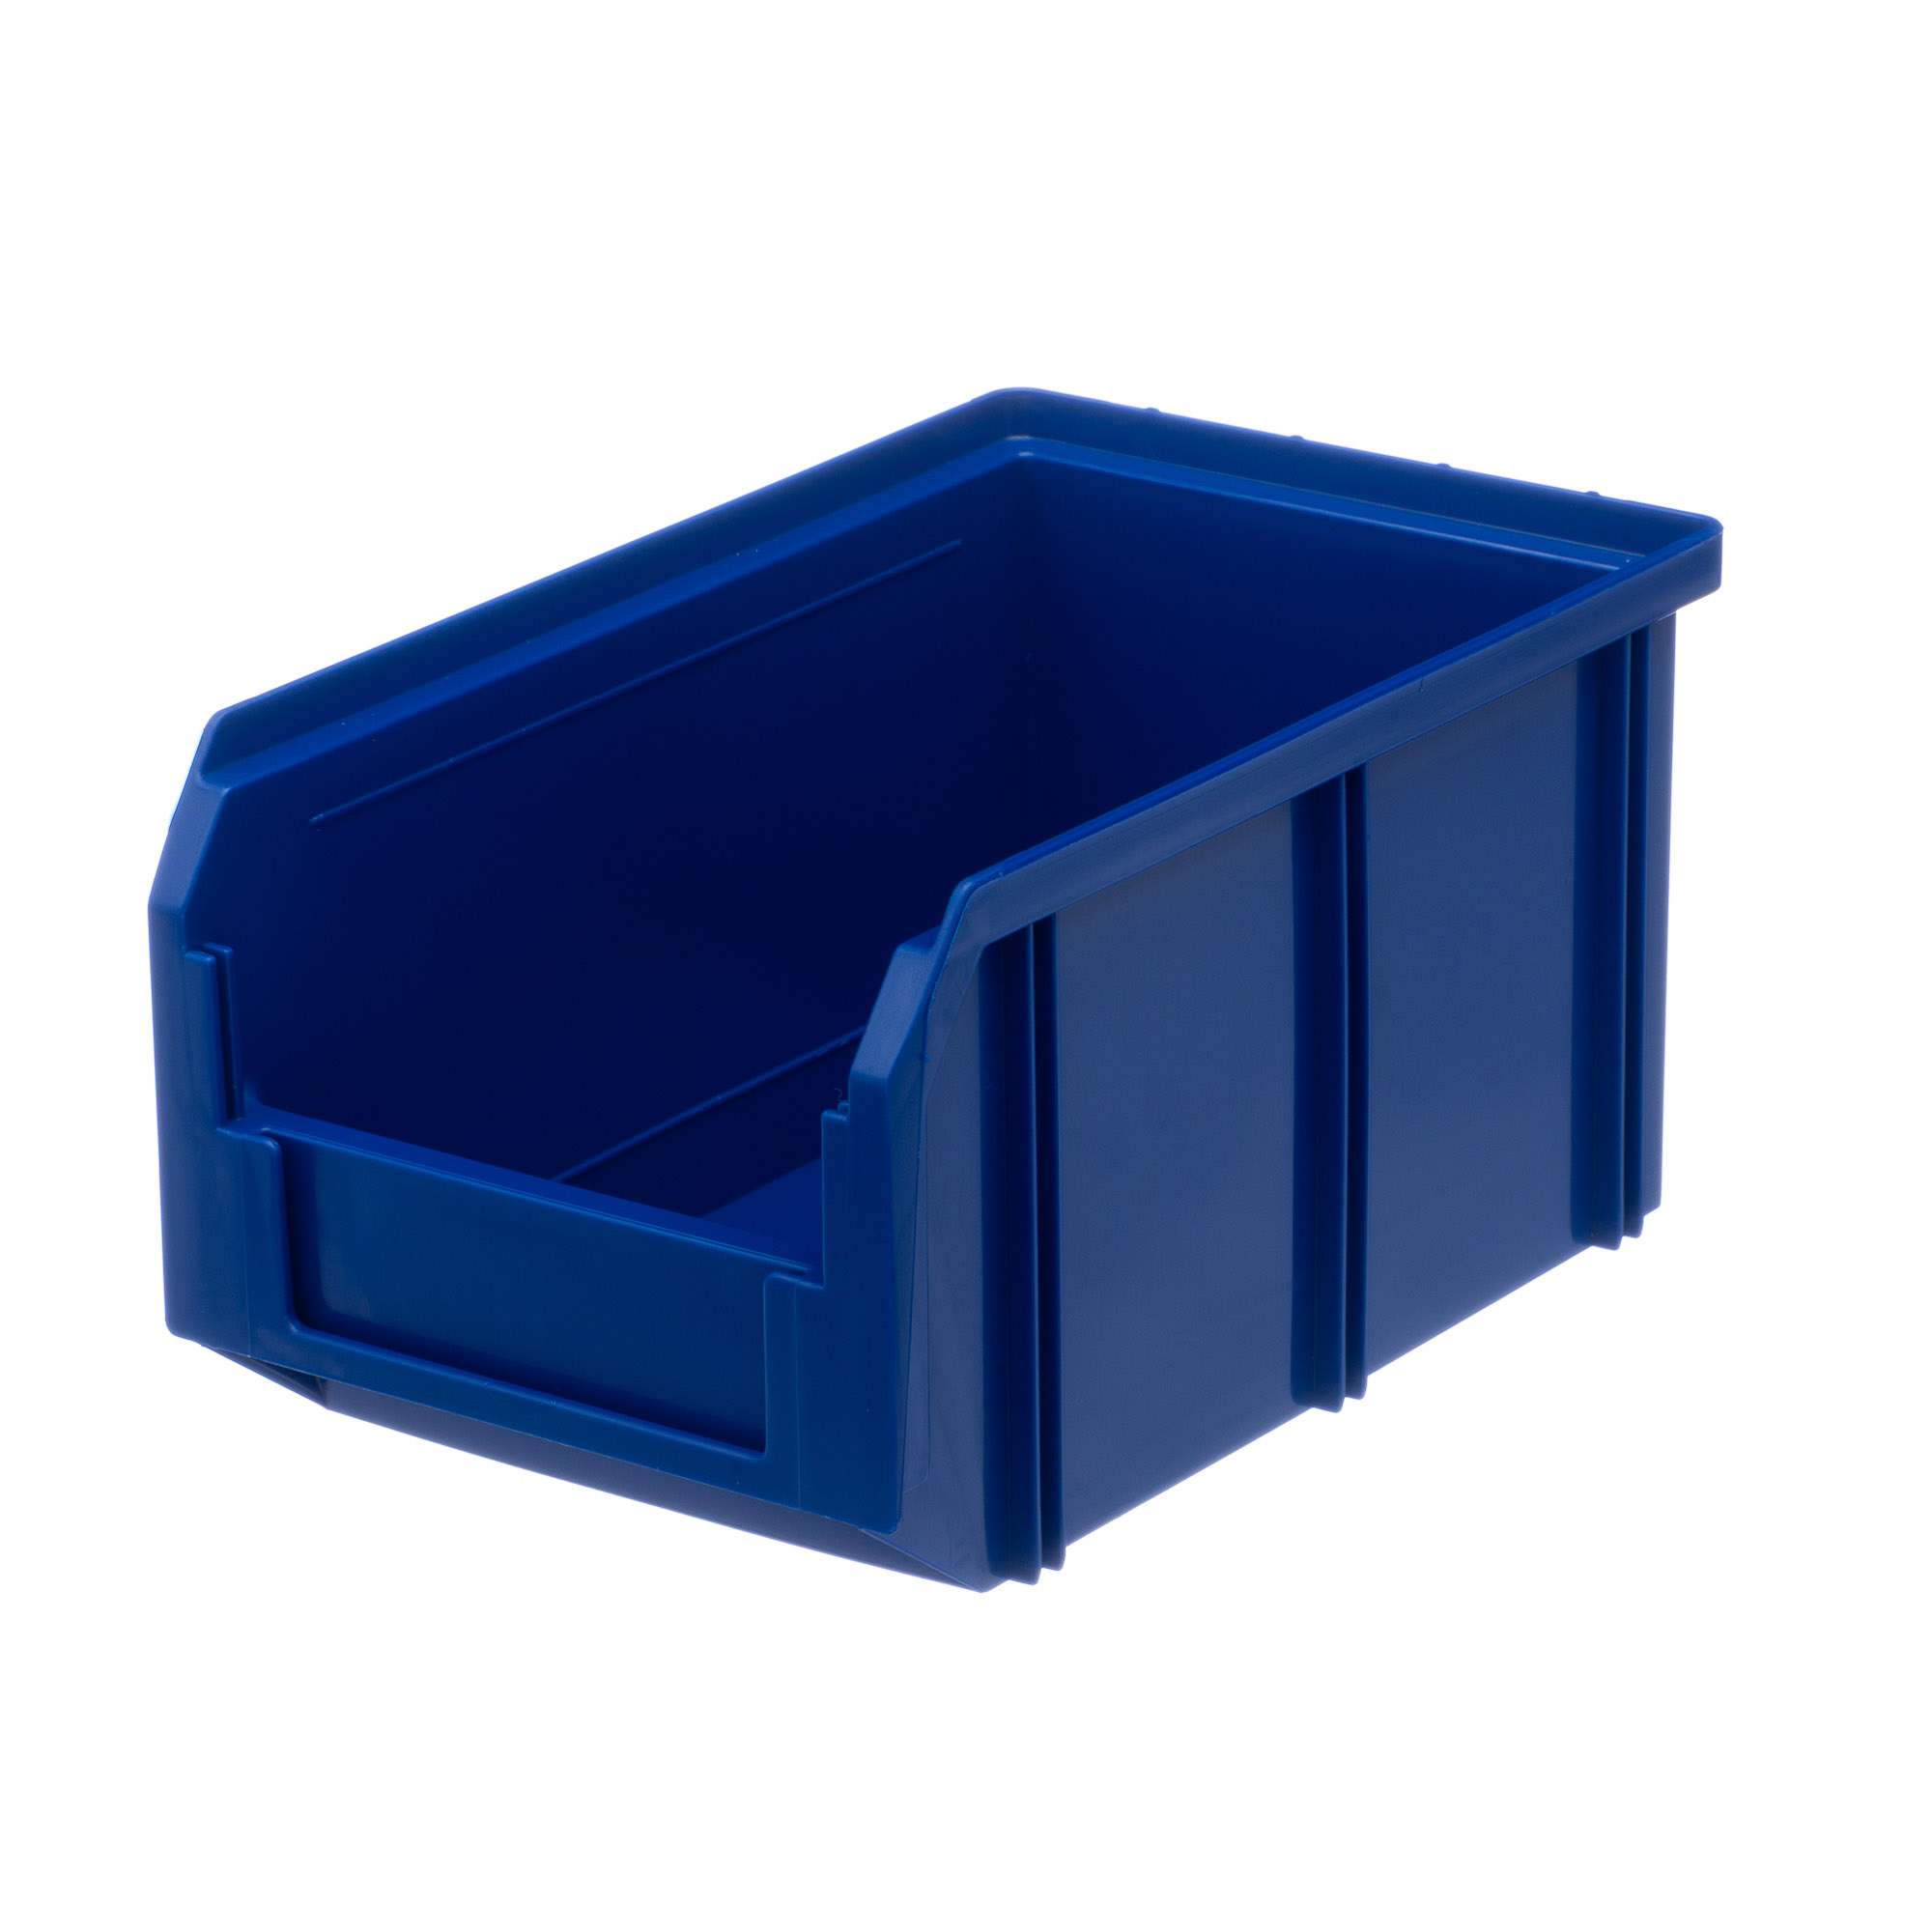 Пластиковый ящик Стелла-техник V-2-синий 234х149х120мм, 3,8 литра папка с ручками а4 360 х 270 х 80 мм текстильная внутренний карман синий 1ш48